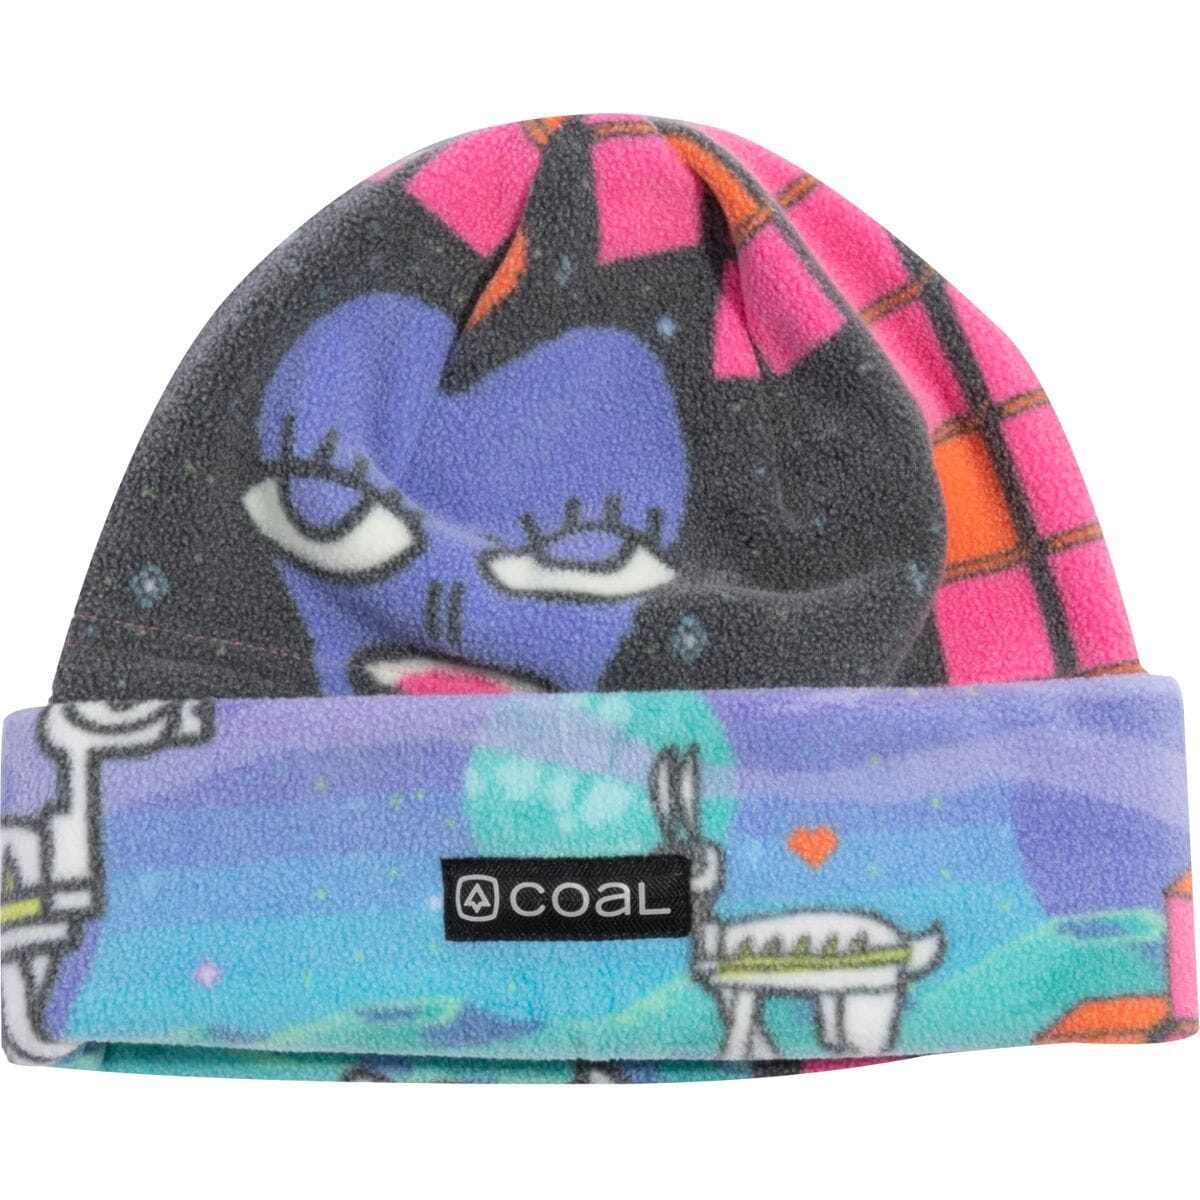 Coal Headwear The New Jack Hat - Kids'